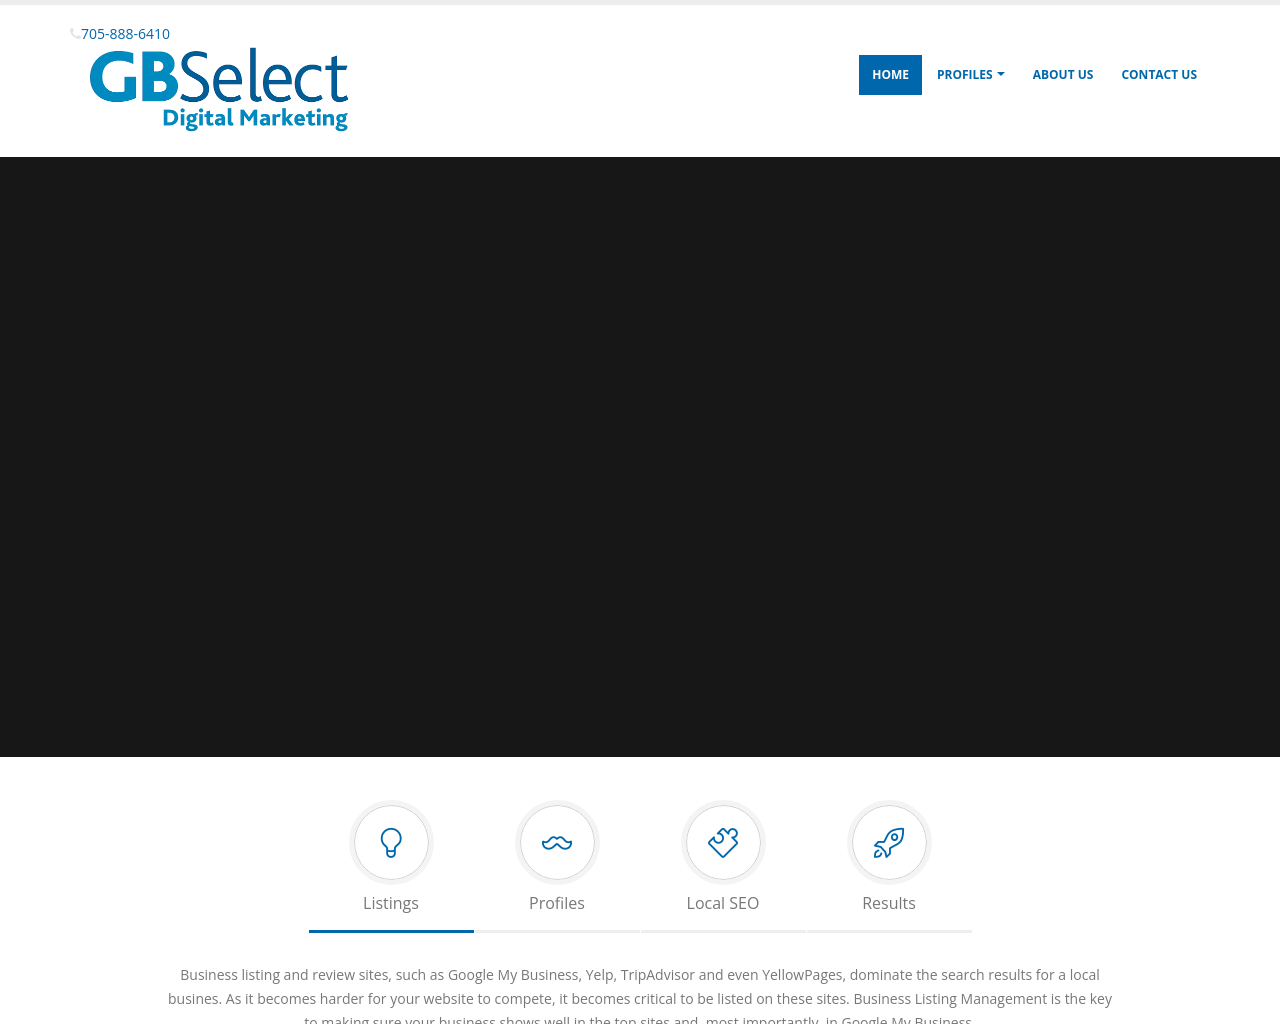 gbselect.com